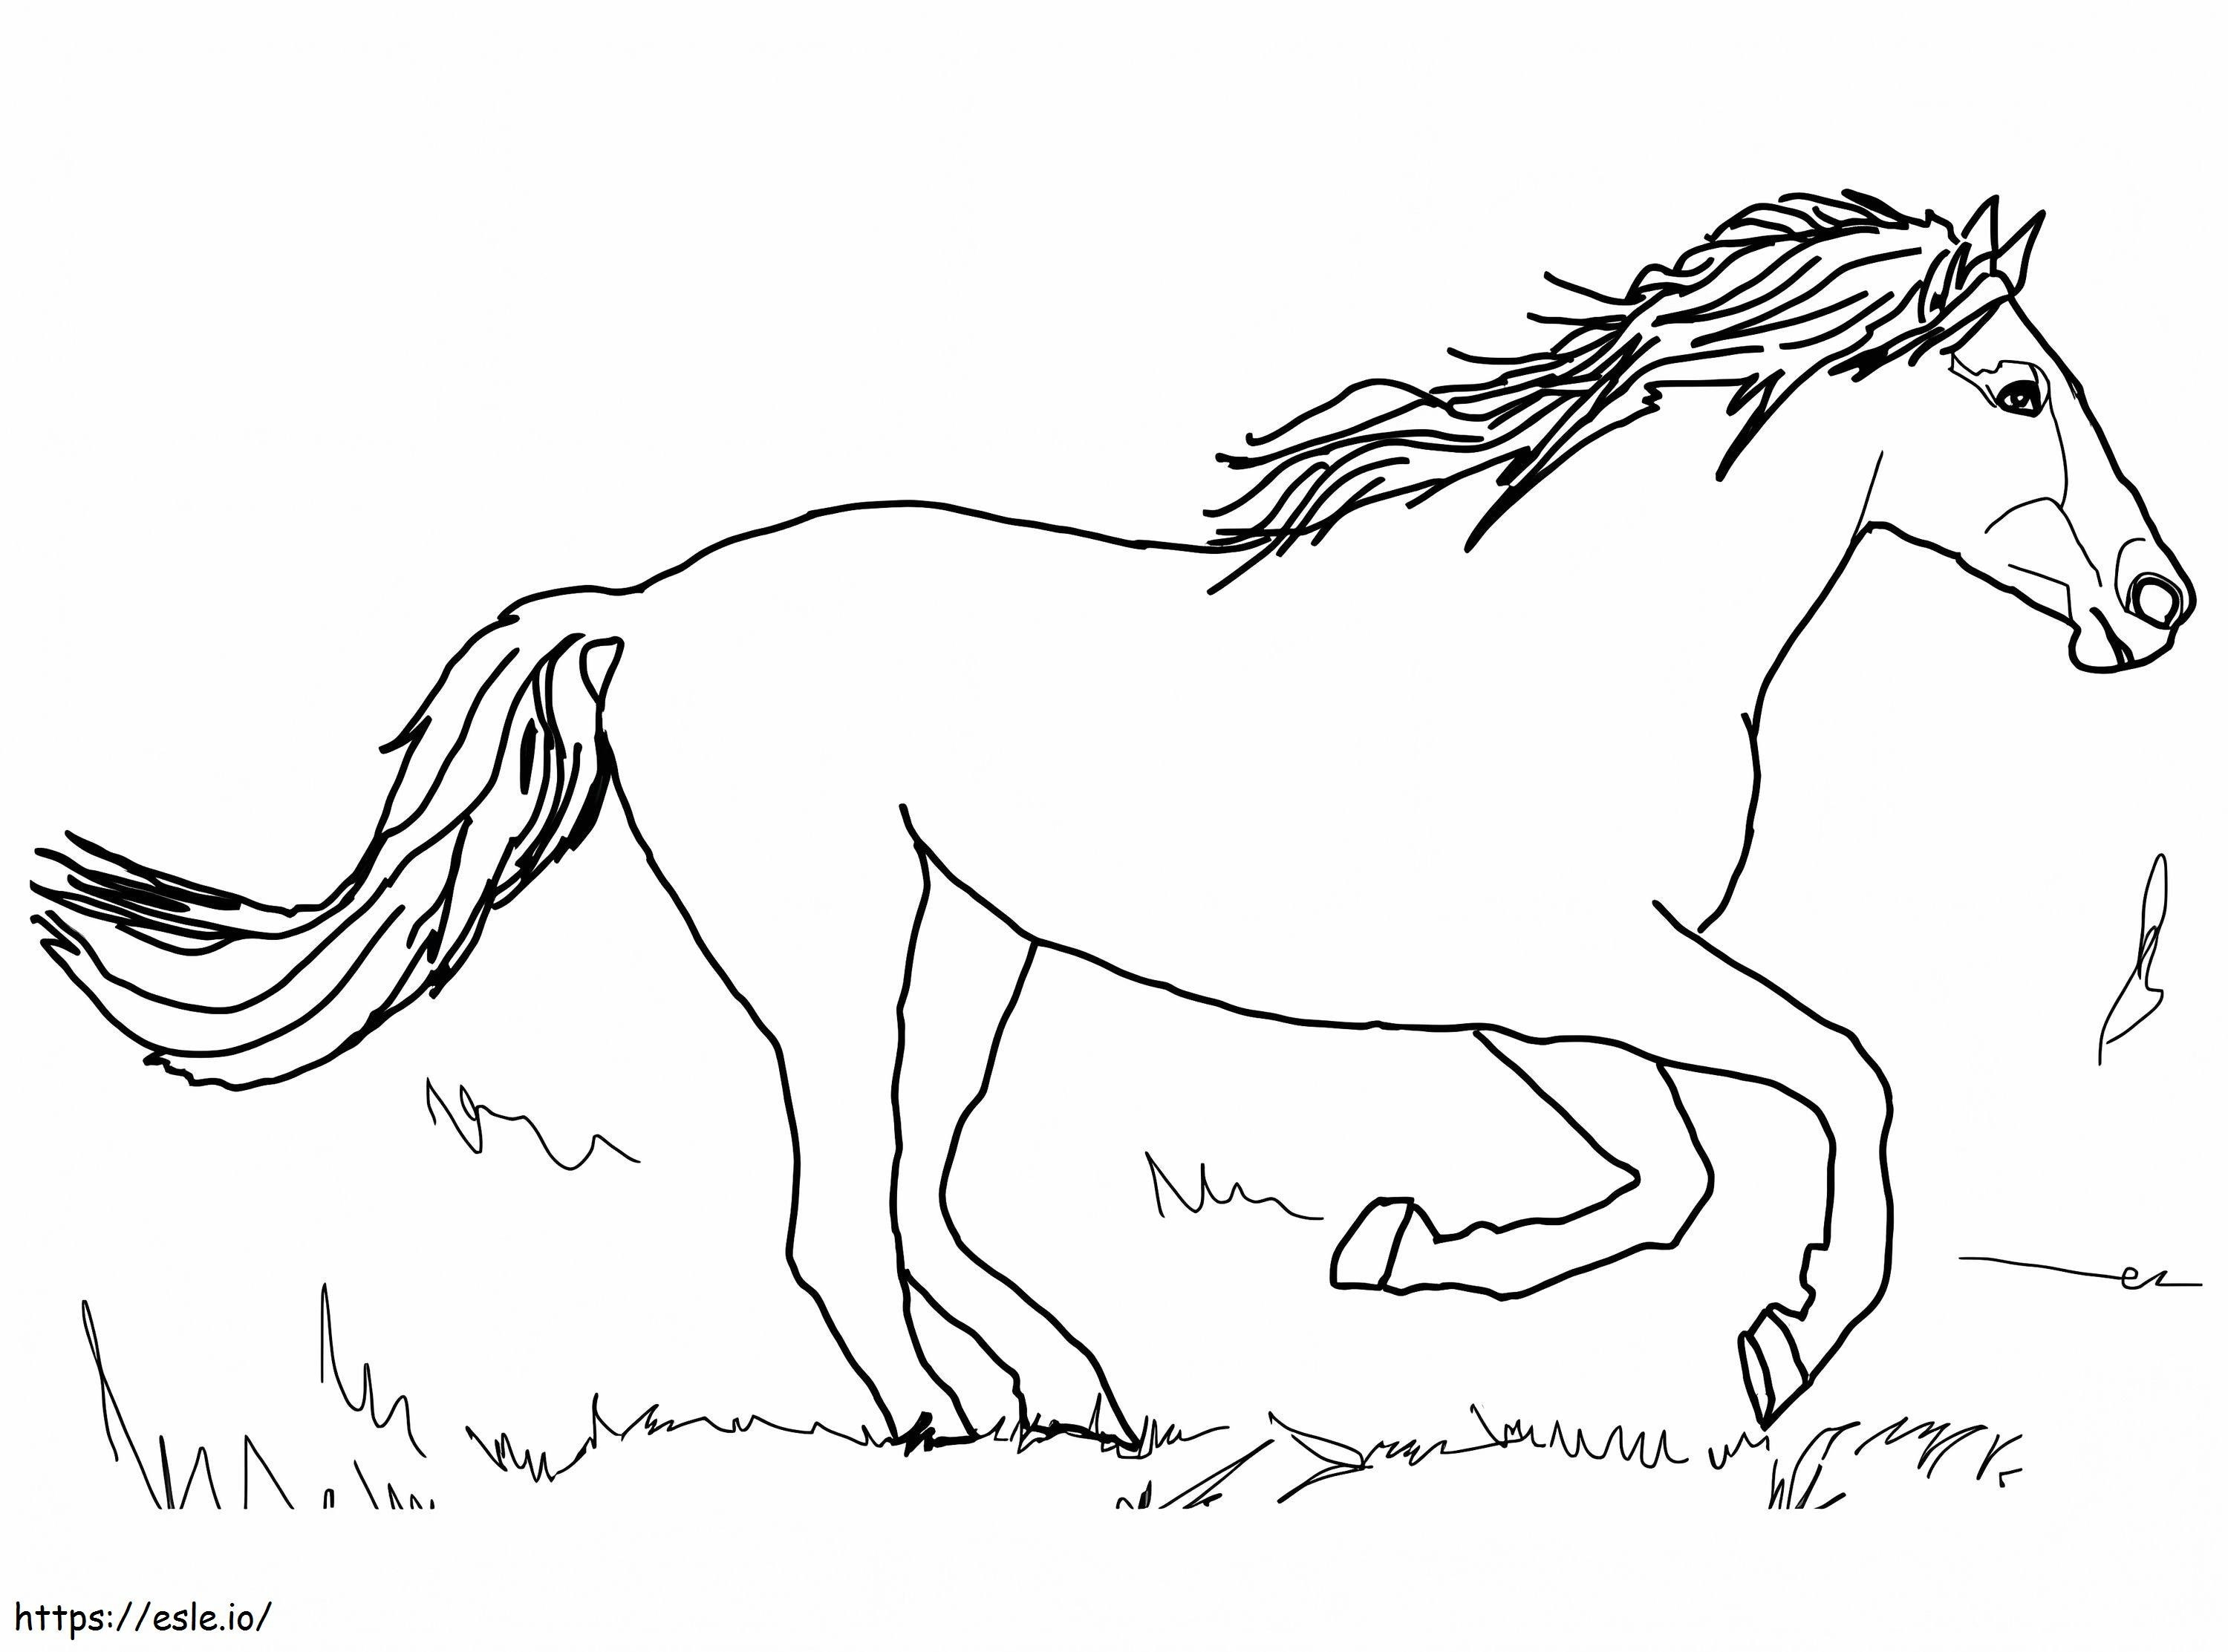 At Koşuyor boyama